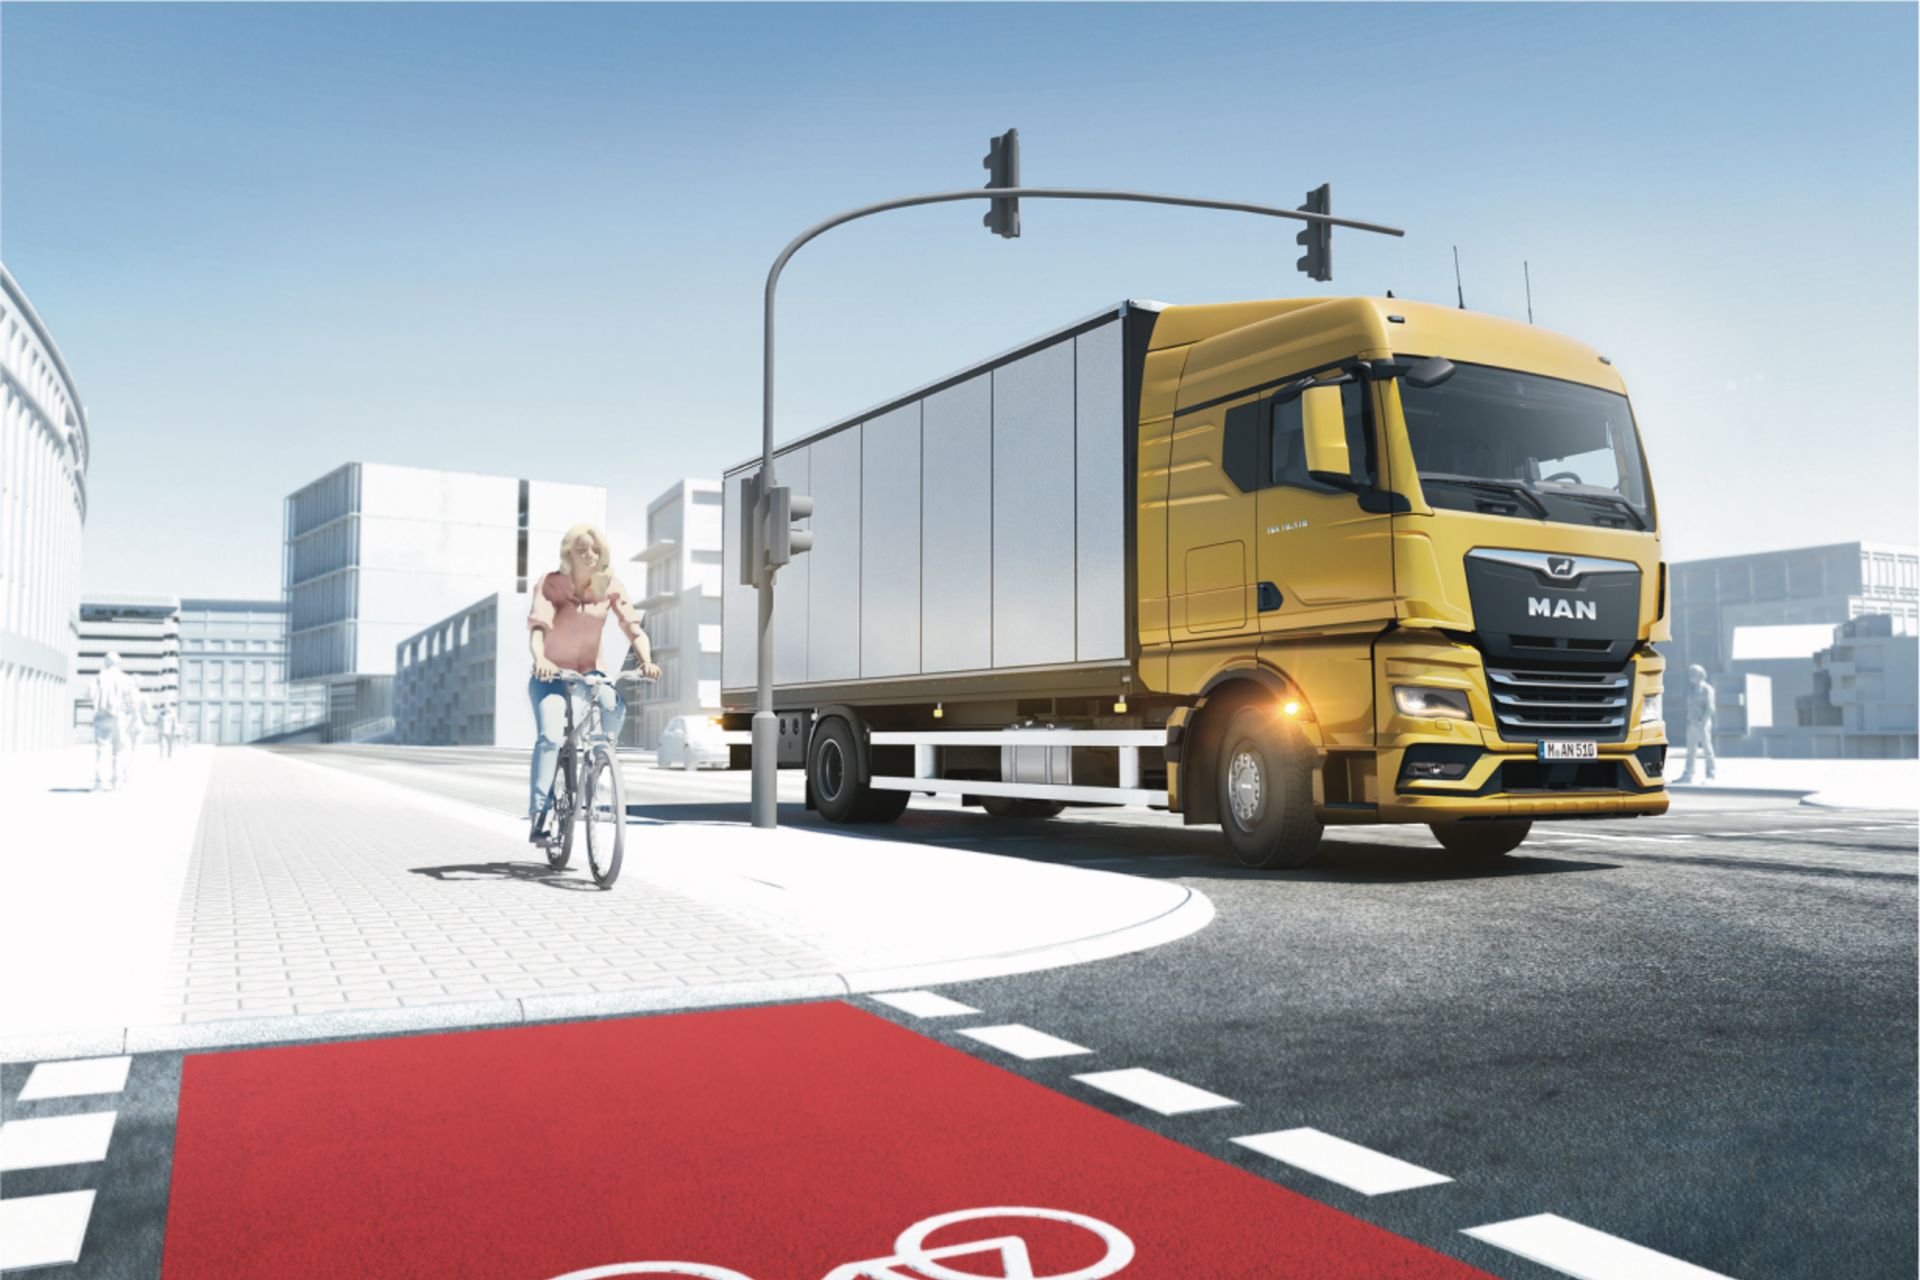 MAN truck drives next to bicycle lane